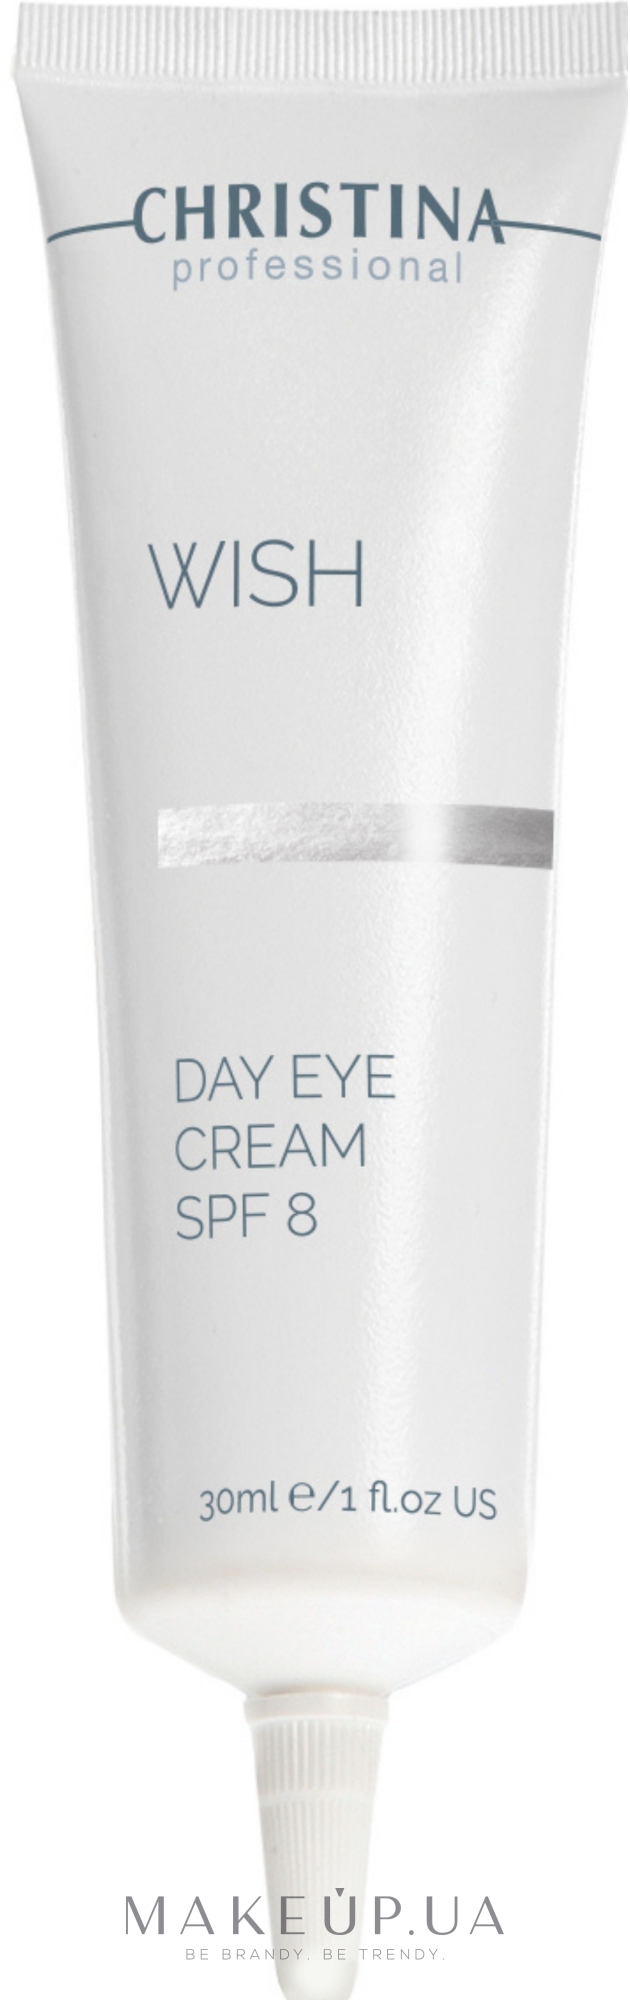 Дневной крем с SPF-8 для кожи вокруг глаз - Christina Wish Day Eye Cream SPF-8 — фото 30ml